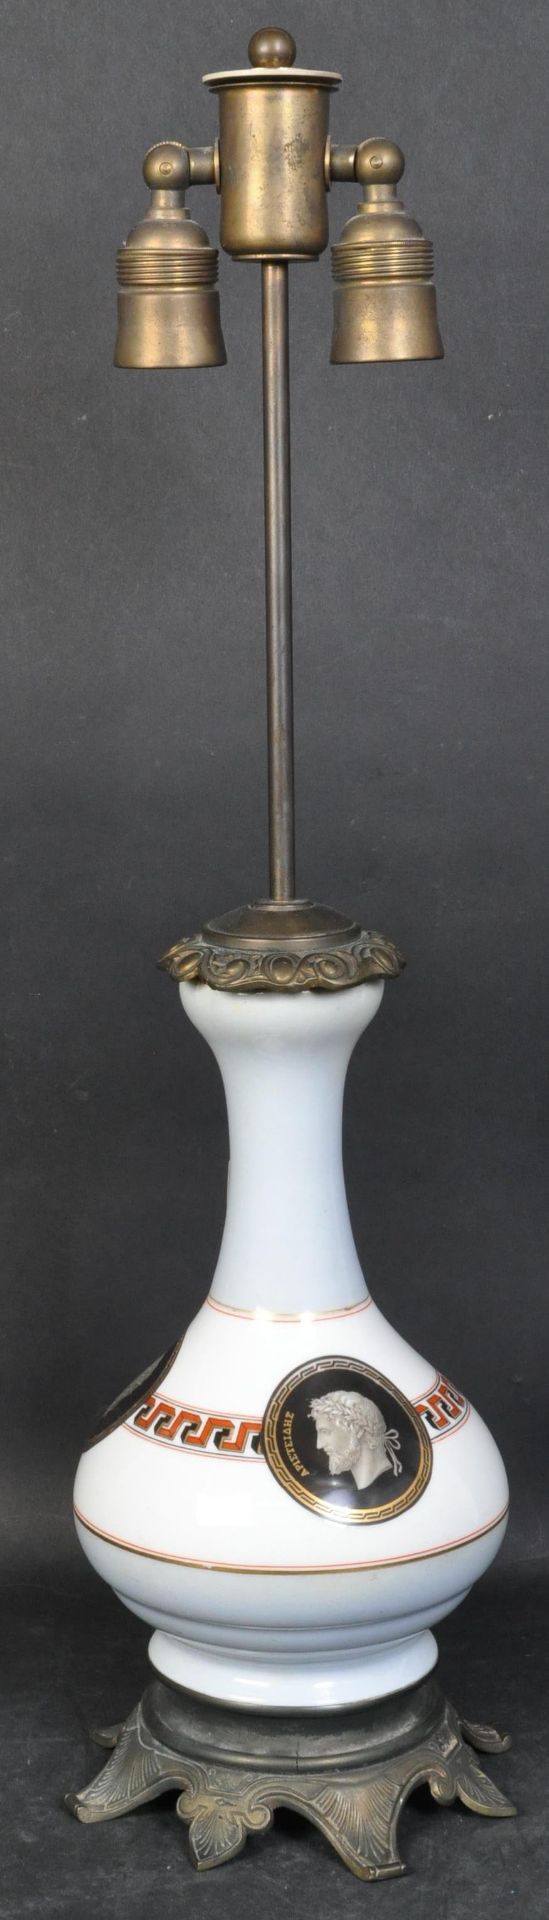 VINTAGE RETRO CERAMIC TABLE LAMP